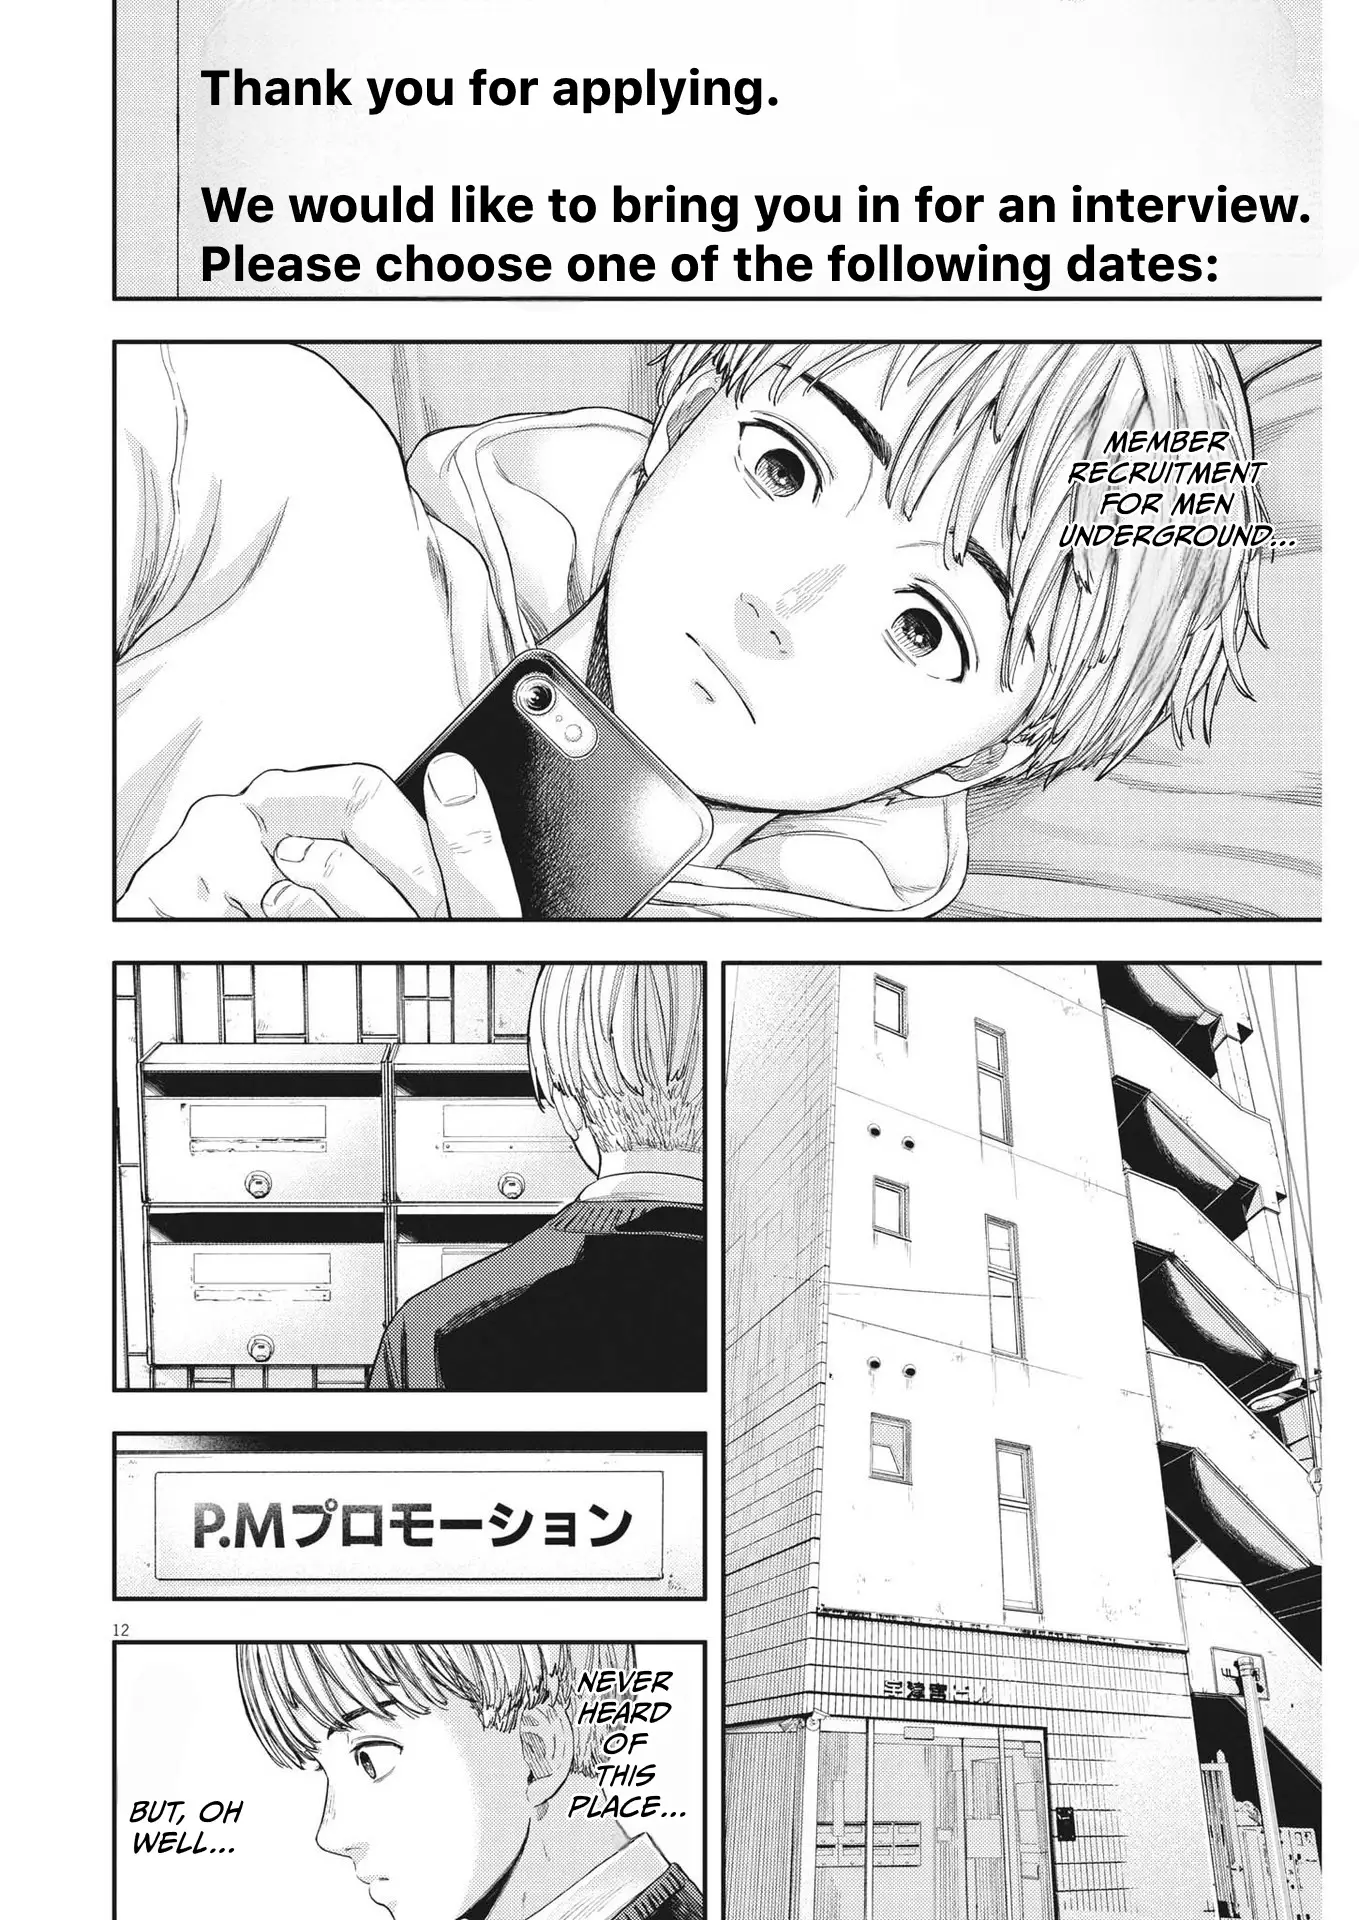 Yumenashi-Sensei No Shinroshidou - 7 page 12-79866c4d